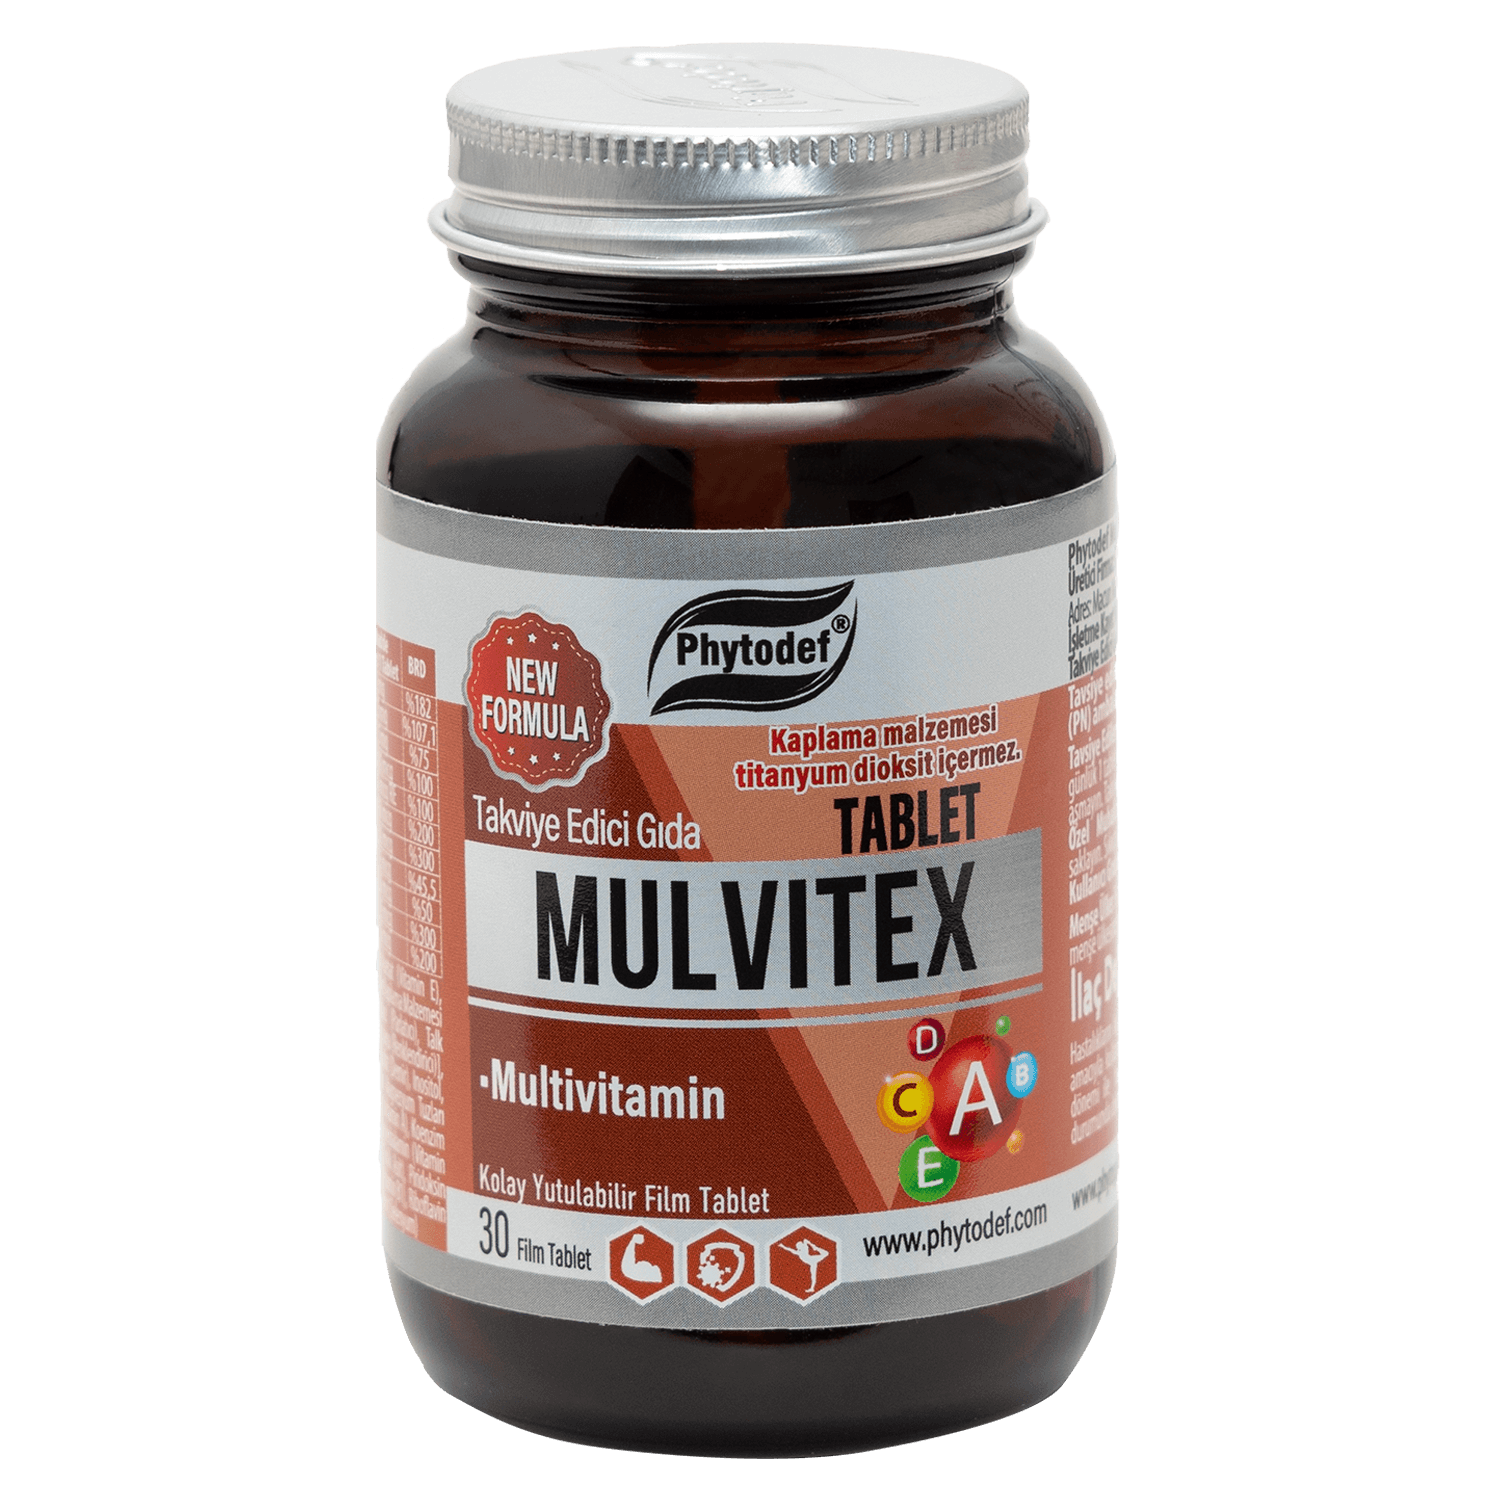 Mulvitex Multivitamin - 30 Tablet